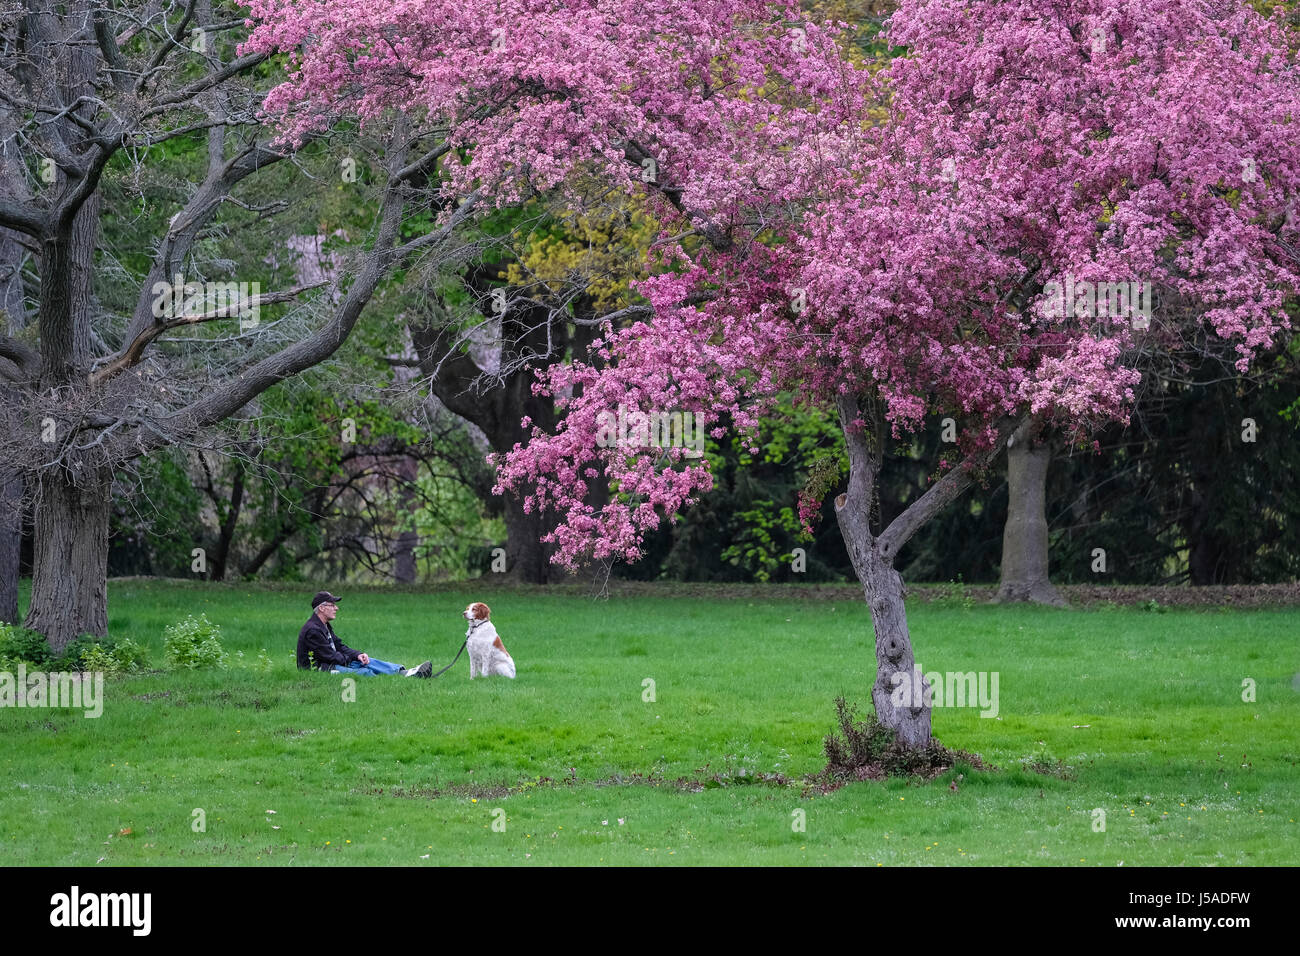 Homme d'âge moyen et chien assis sur l'herbe verte, crabier fleuri, parc de la ville, paisible, relaxant, compagnie, Springbank, London, Ontario Banque D'Images